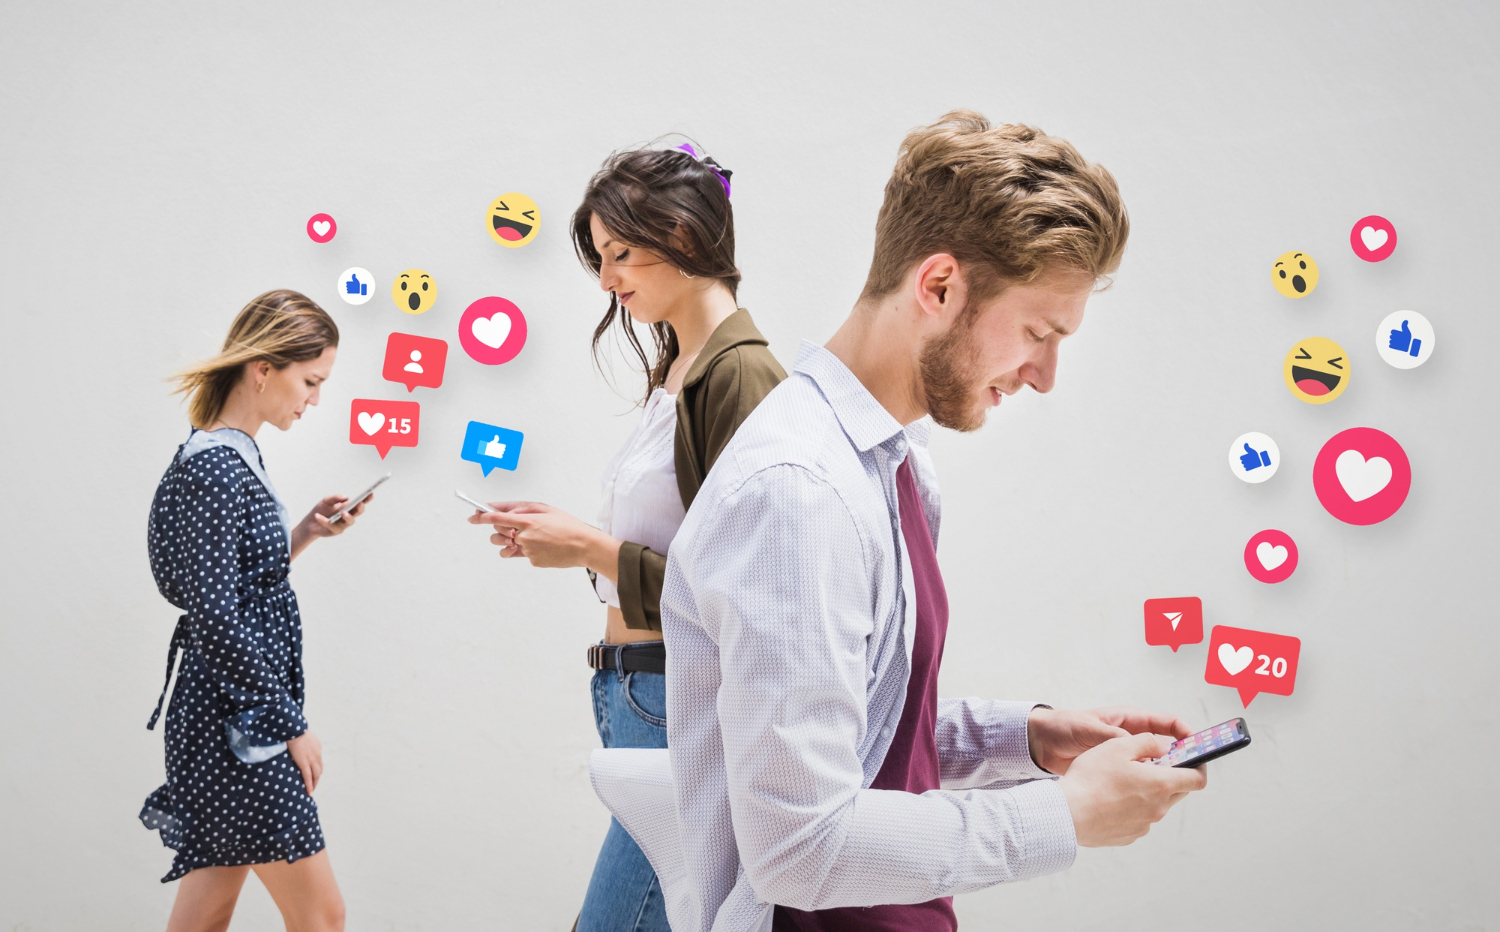 Desconectar de las redes sociales disminuye la satisfacción vital, según un estudio